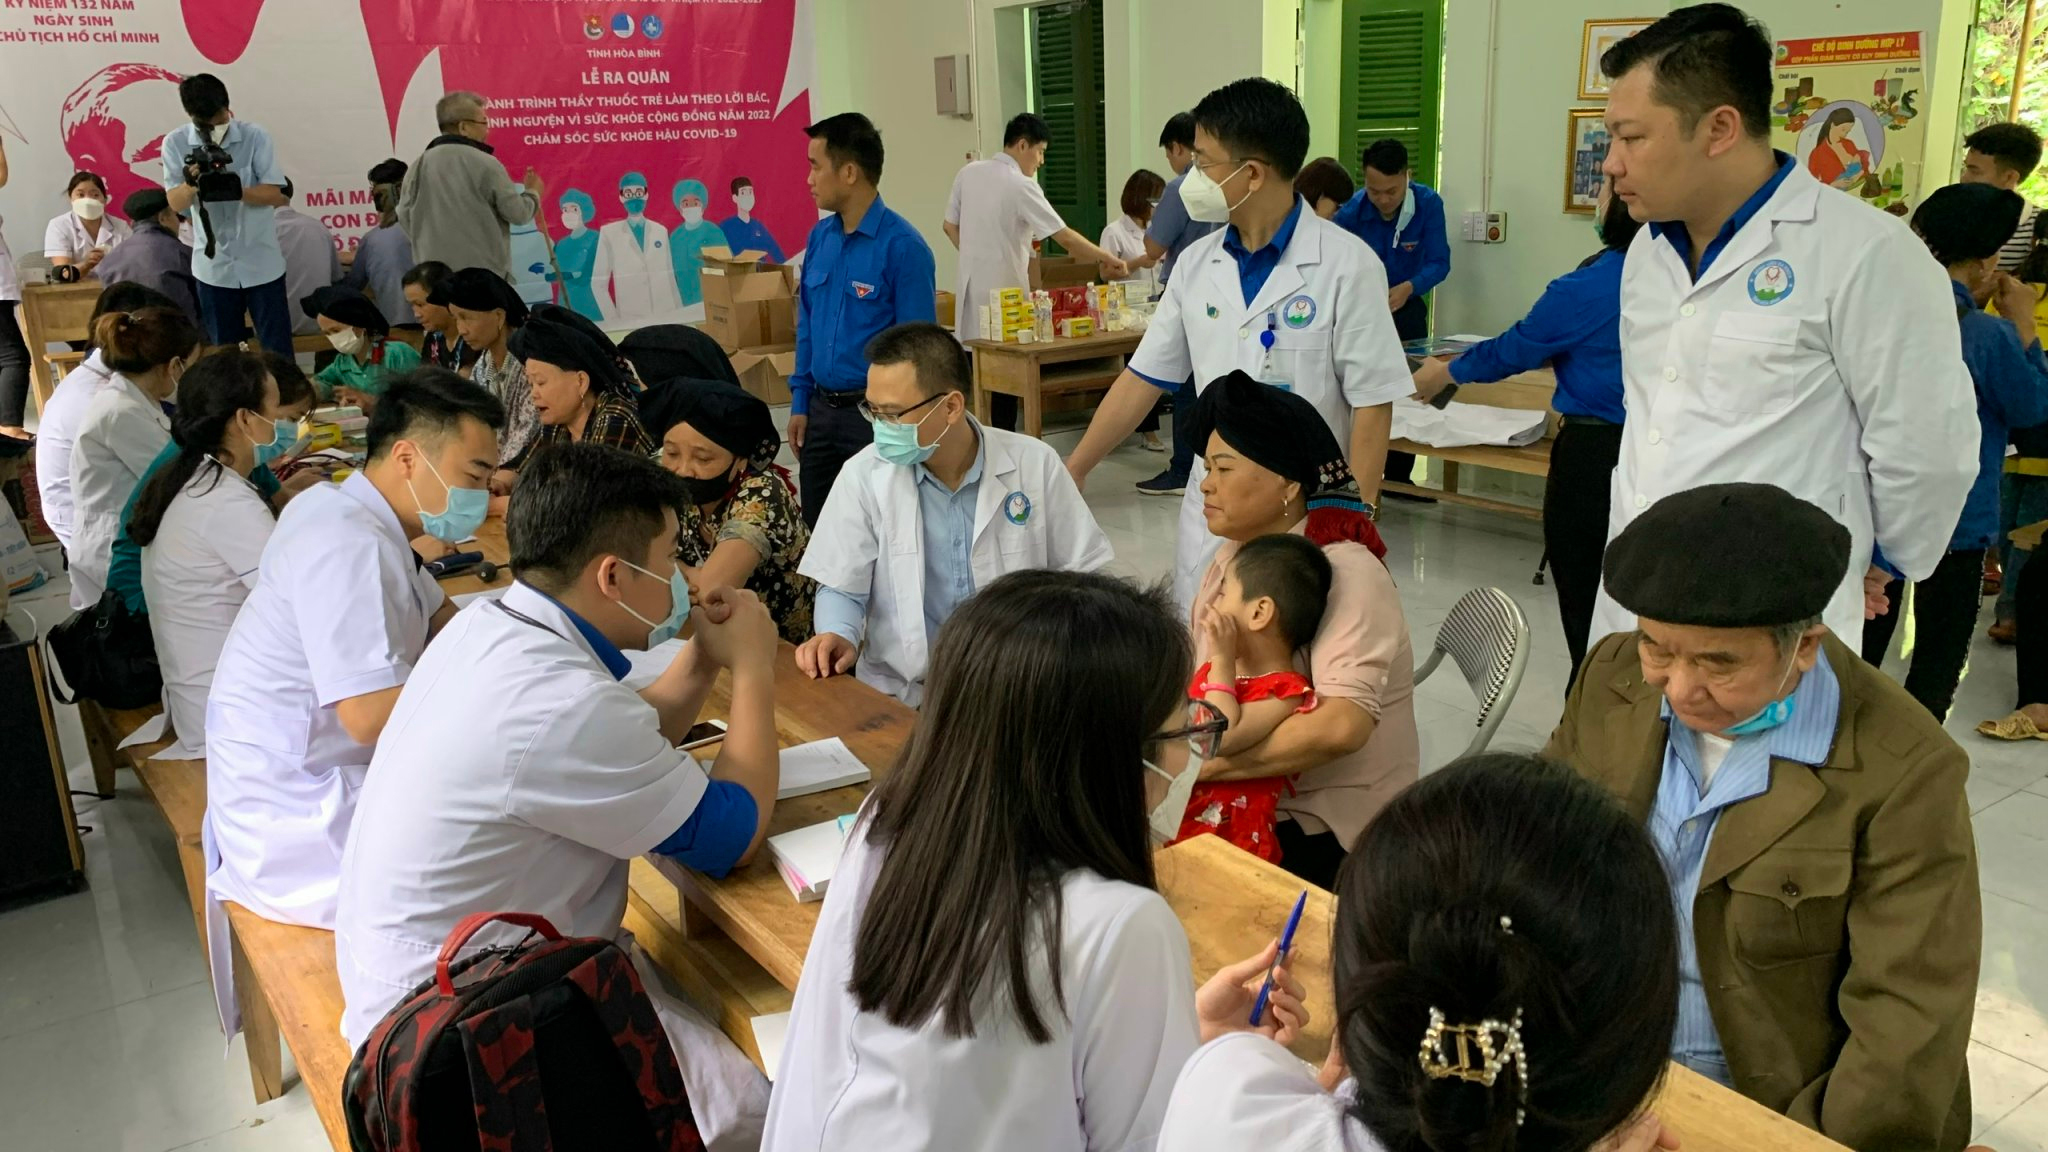  Đoàn Thanh niên Bệnh viện Đa khoa tỉnh Hoà Bình khám sức khoẻ cộng đồng cho 200 người tại huyện Đà Bắc